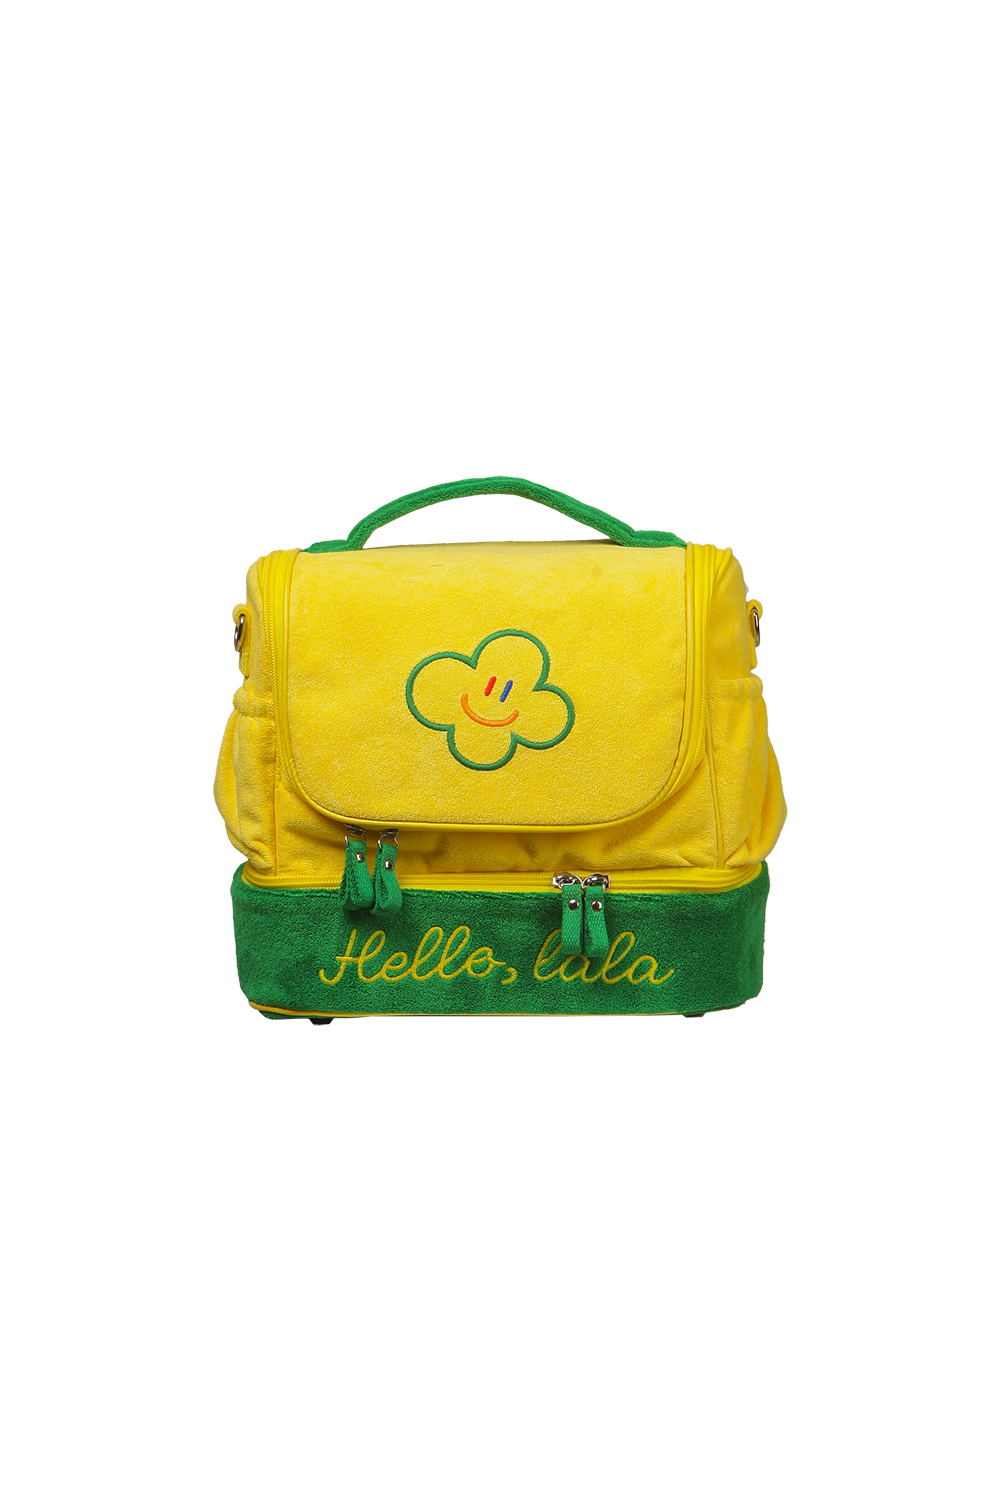 Hello LaLa Multi Cooler Bag [Yellow]